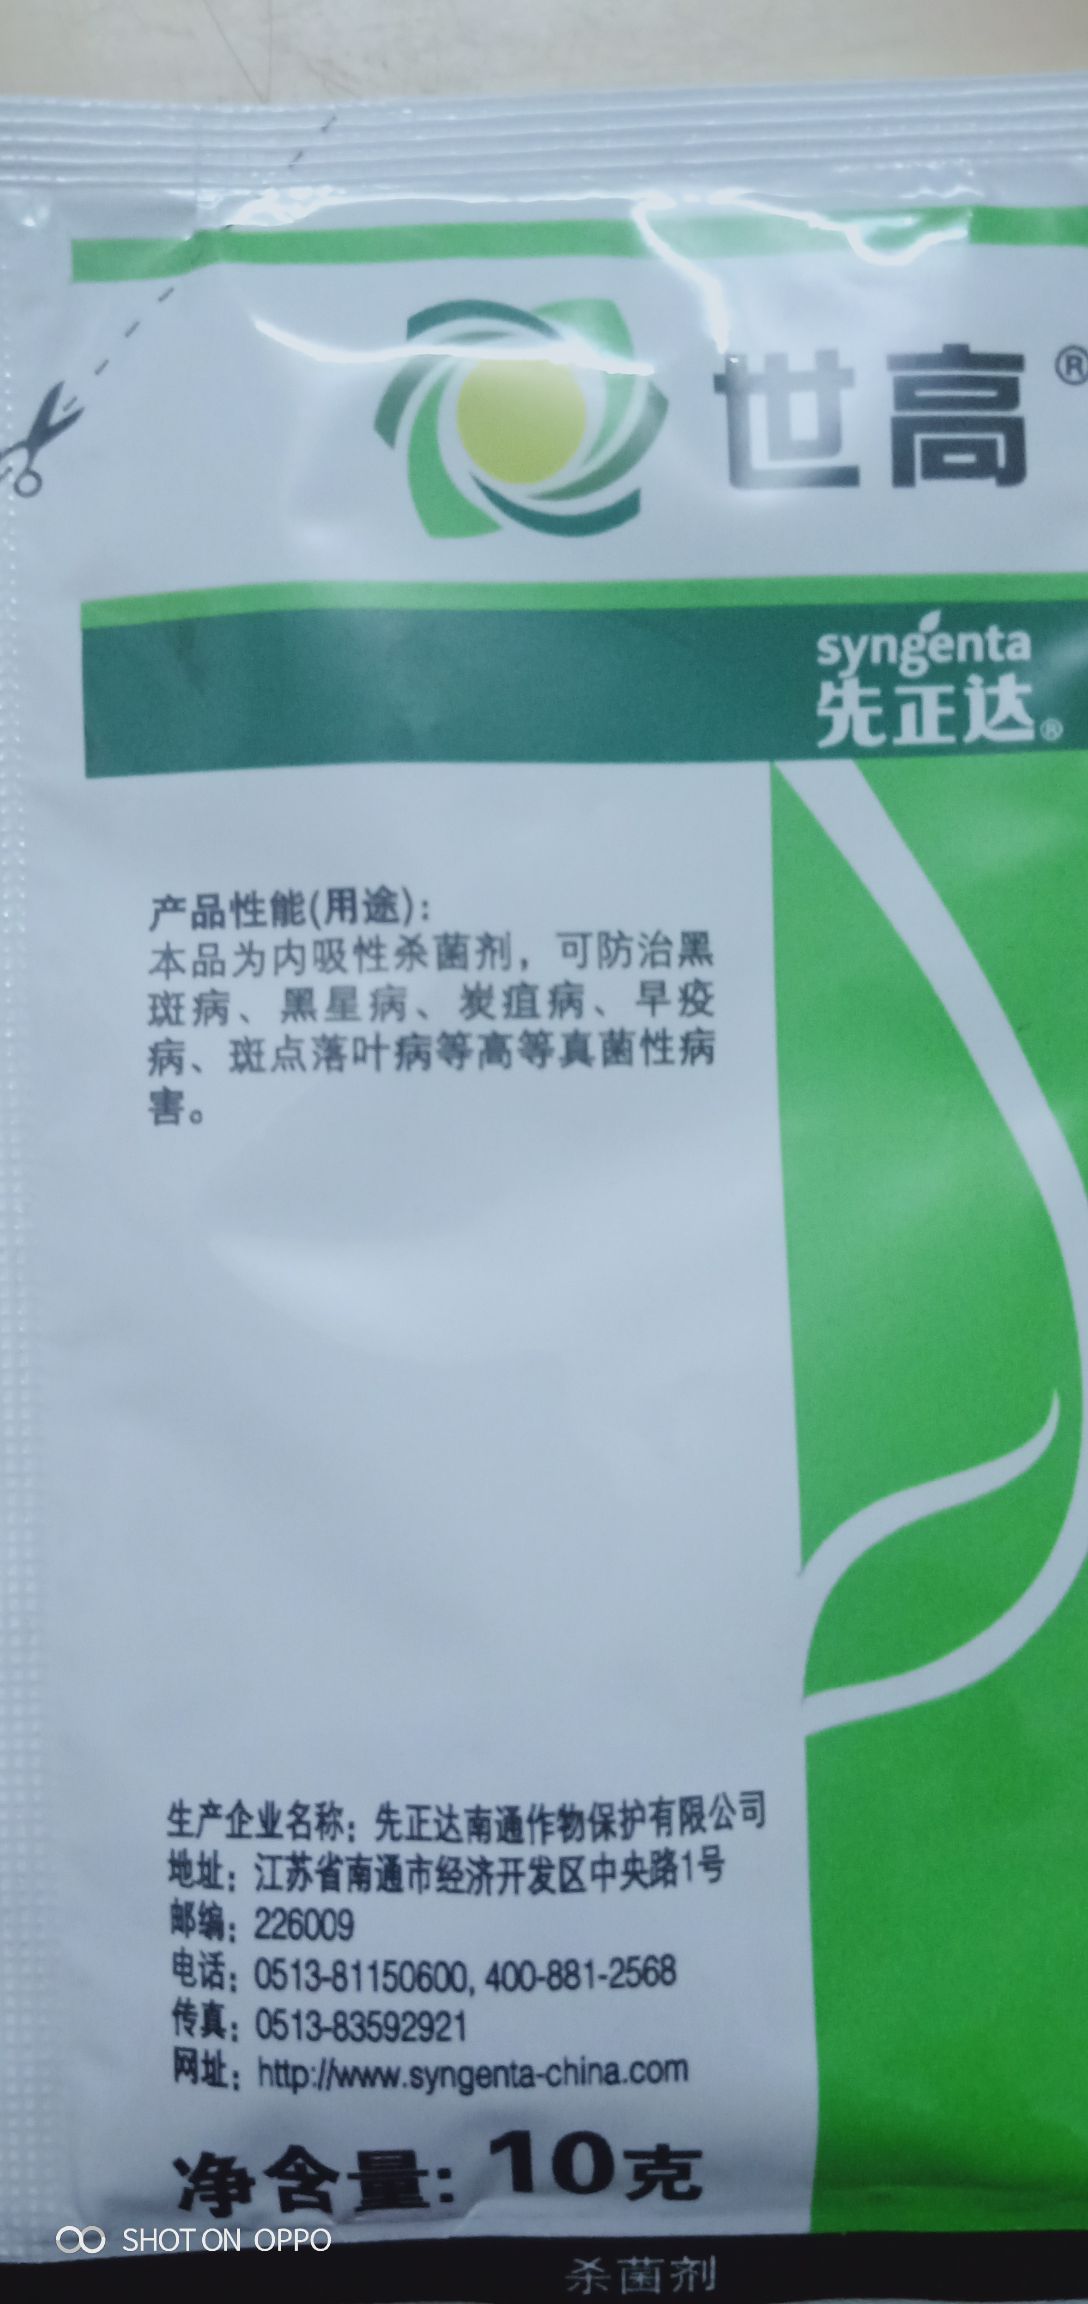 苯醚甲环唑 剂型:分散剂 货品包装:袋装 毒性:微毒 品牌:先正达 货品